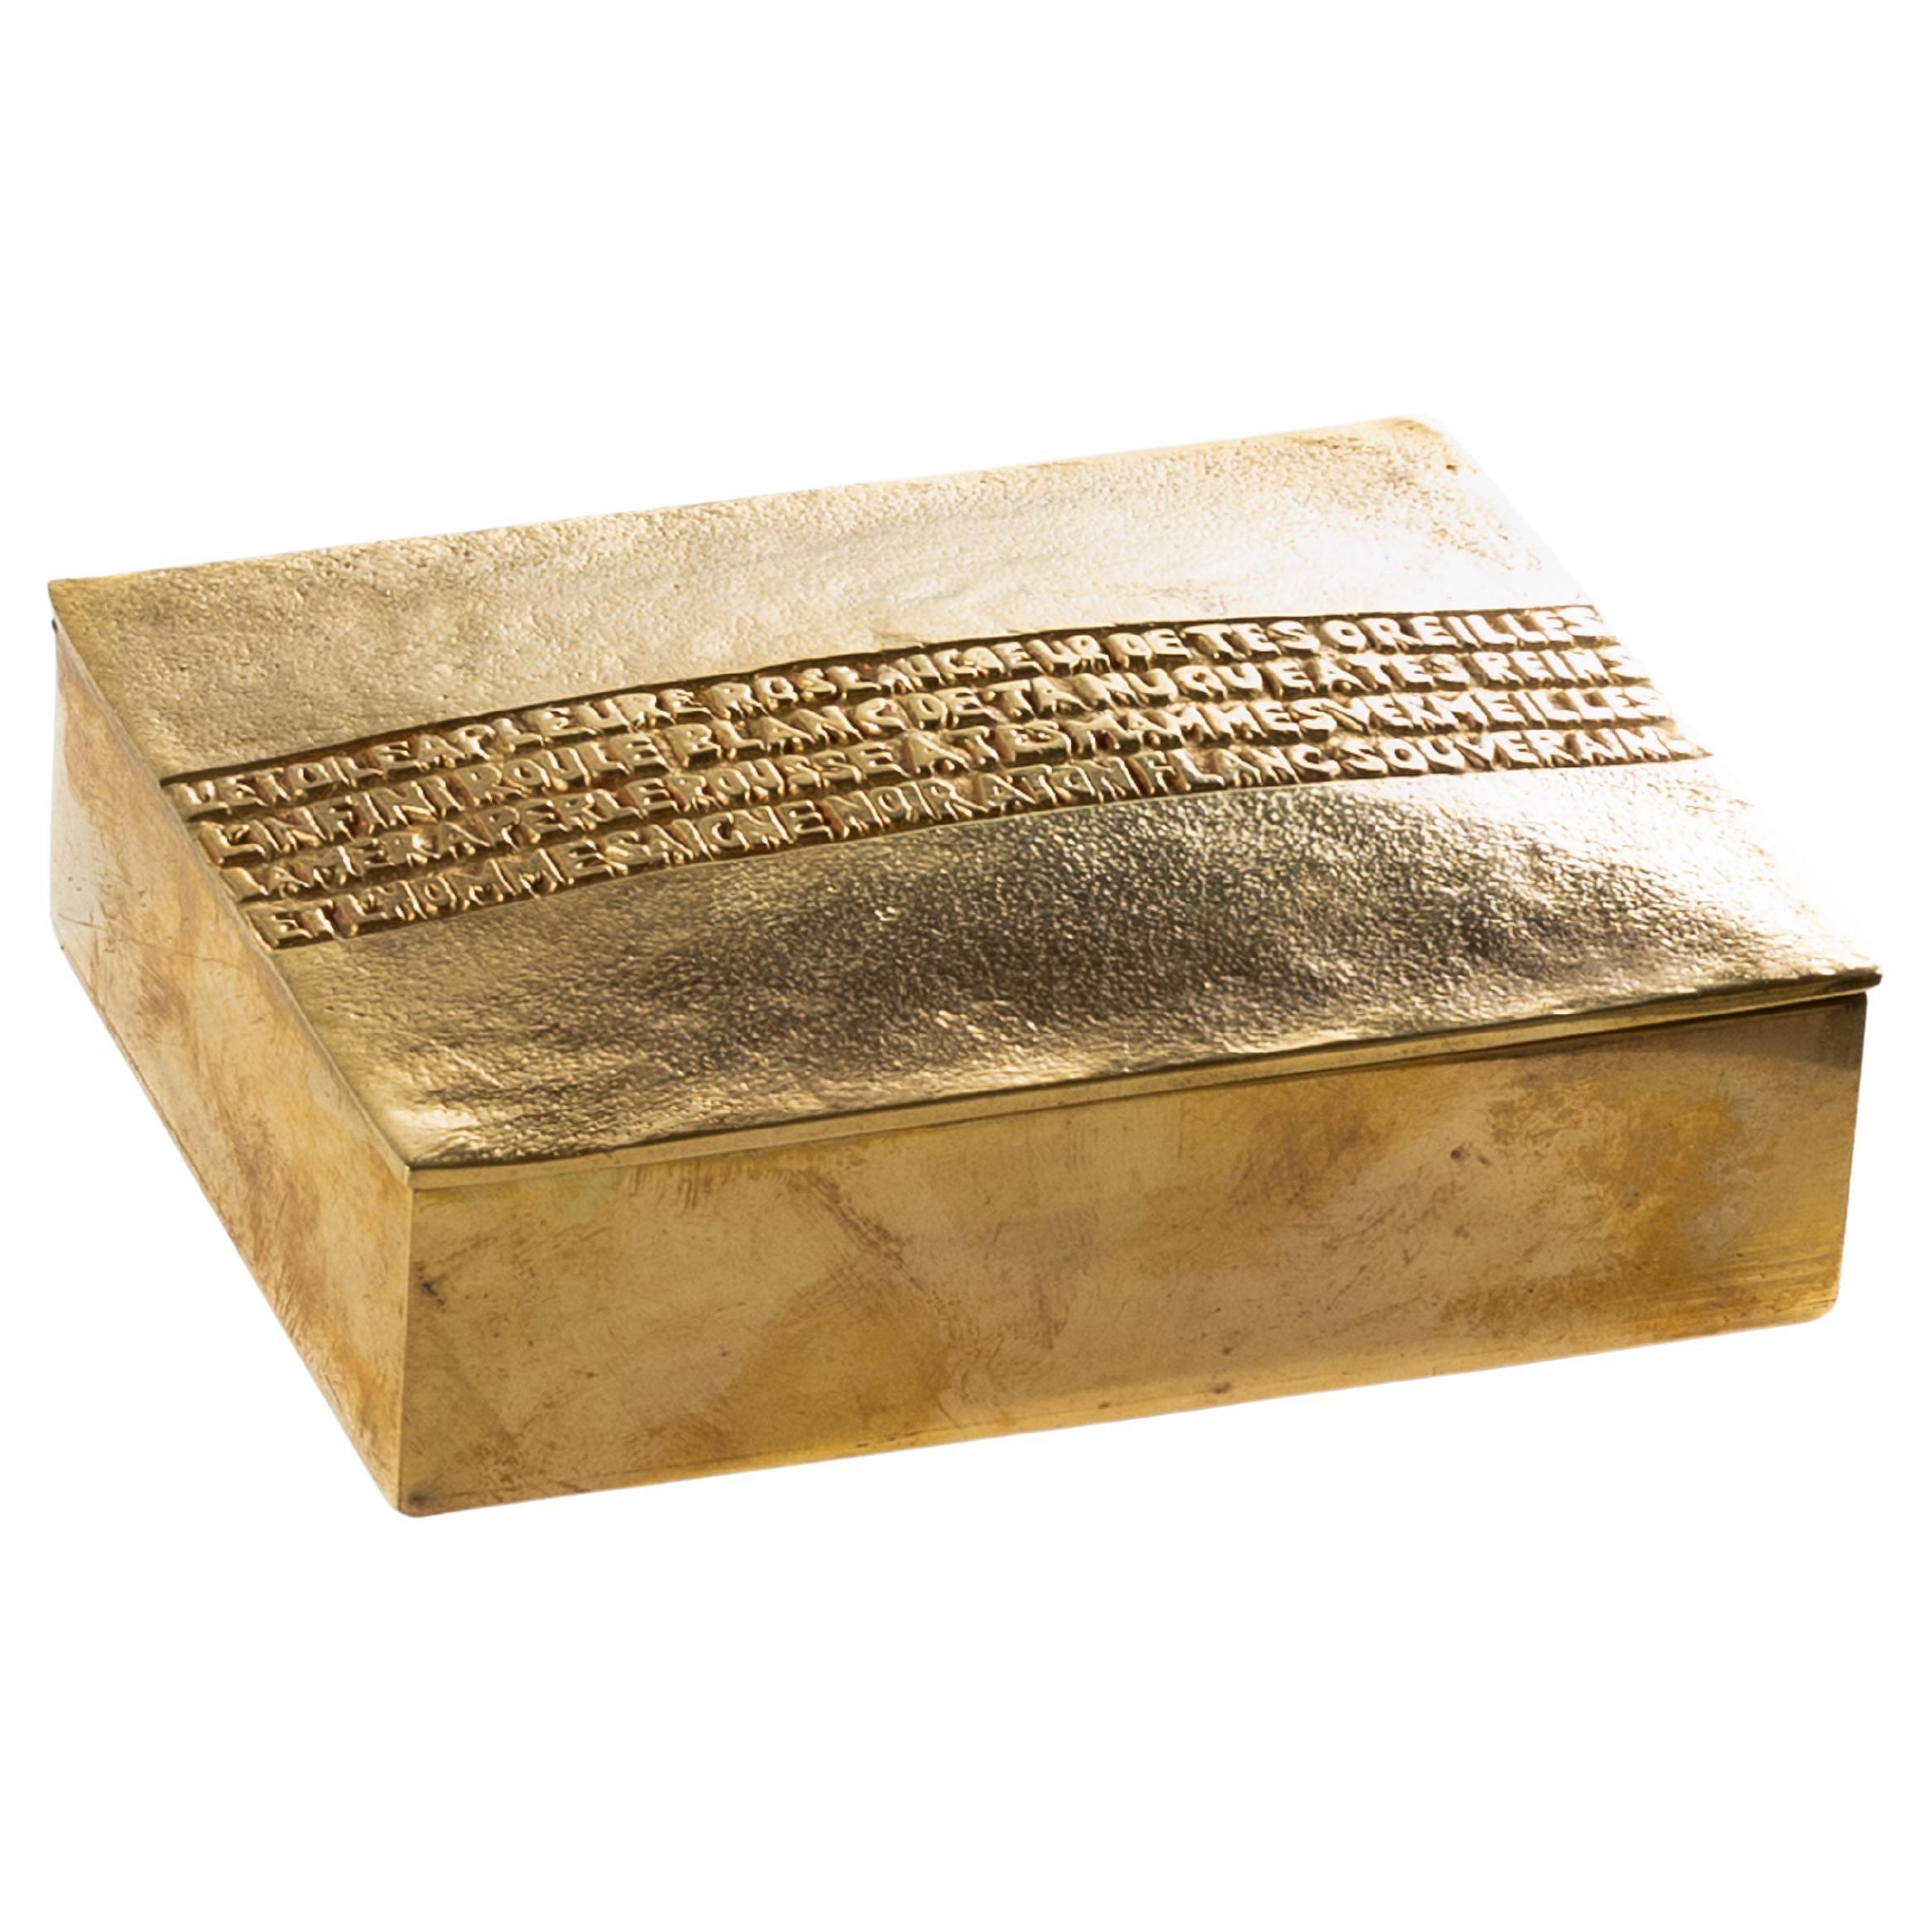 L’étoile a pleuré rose by Line Vautrin - Rare gilded bronze box For Sale